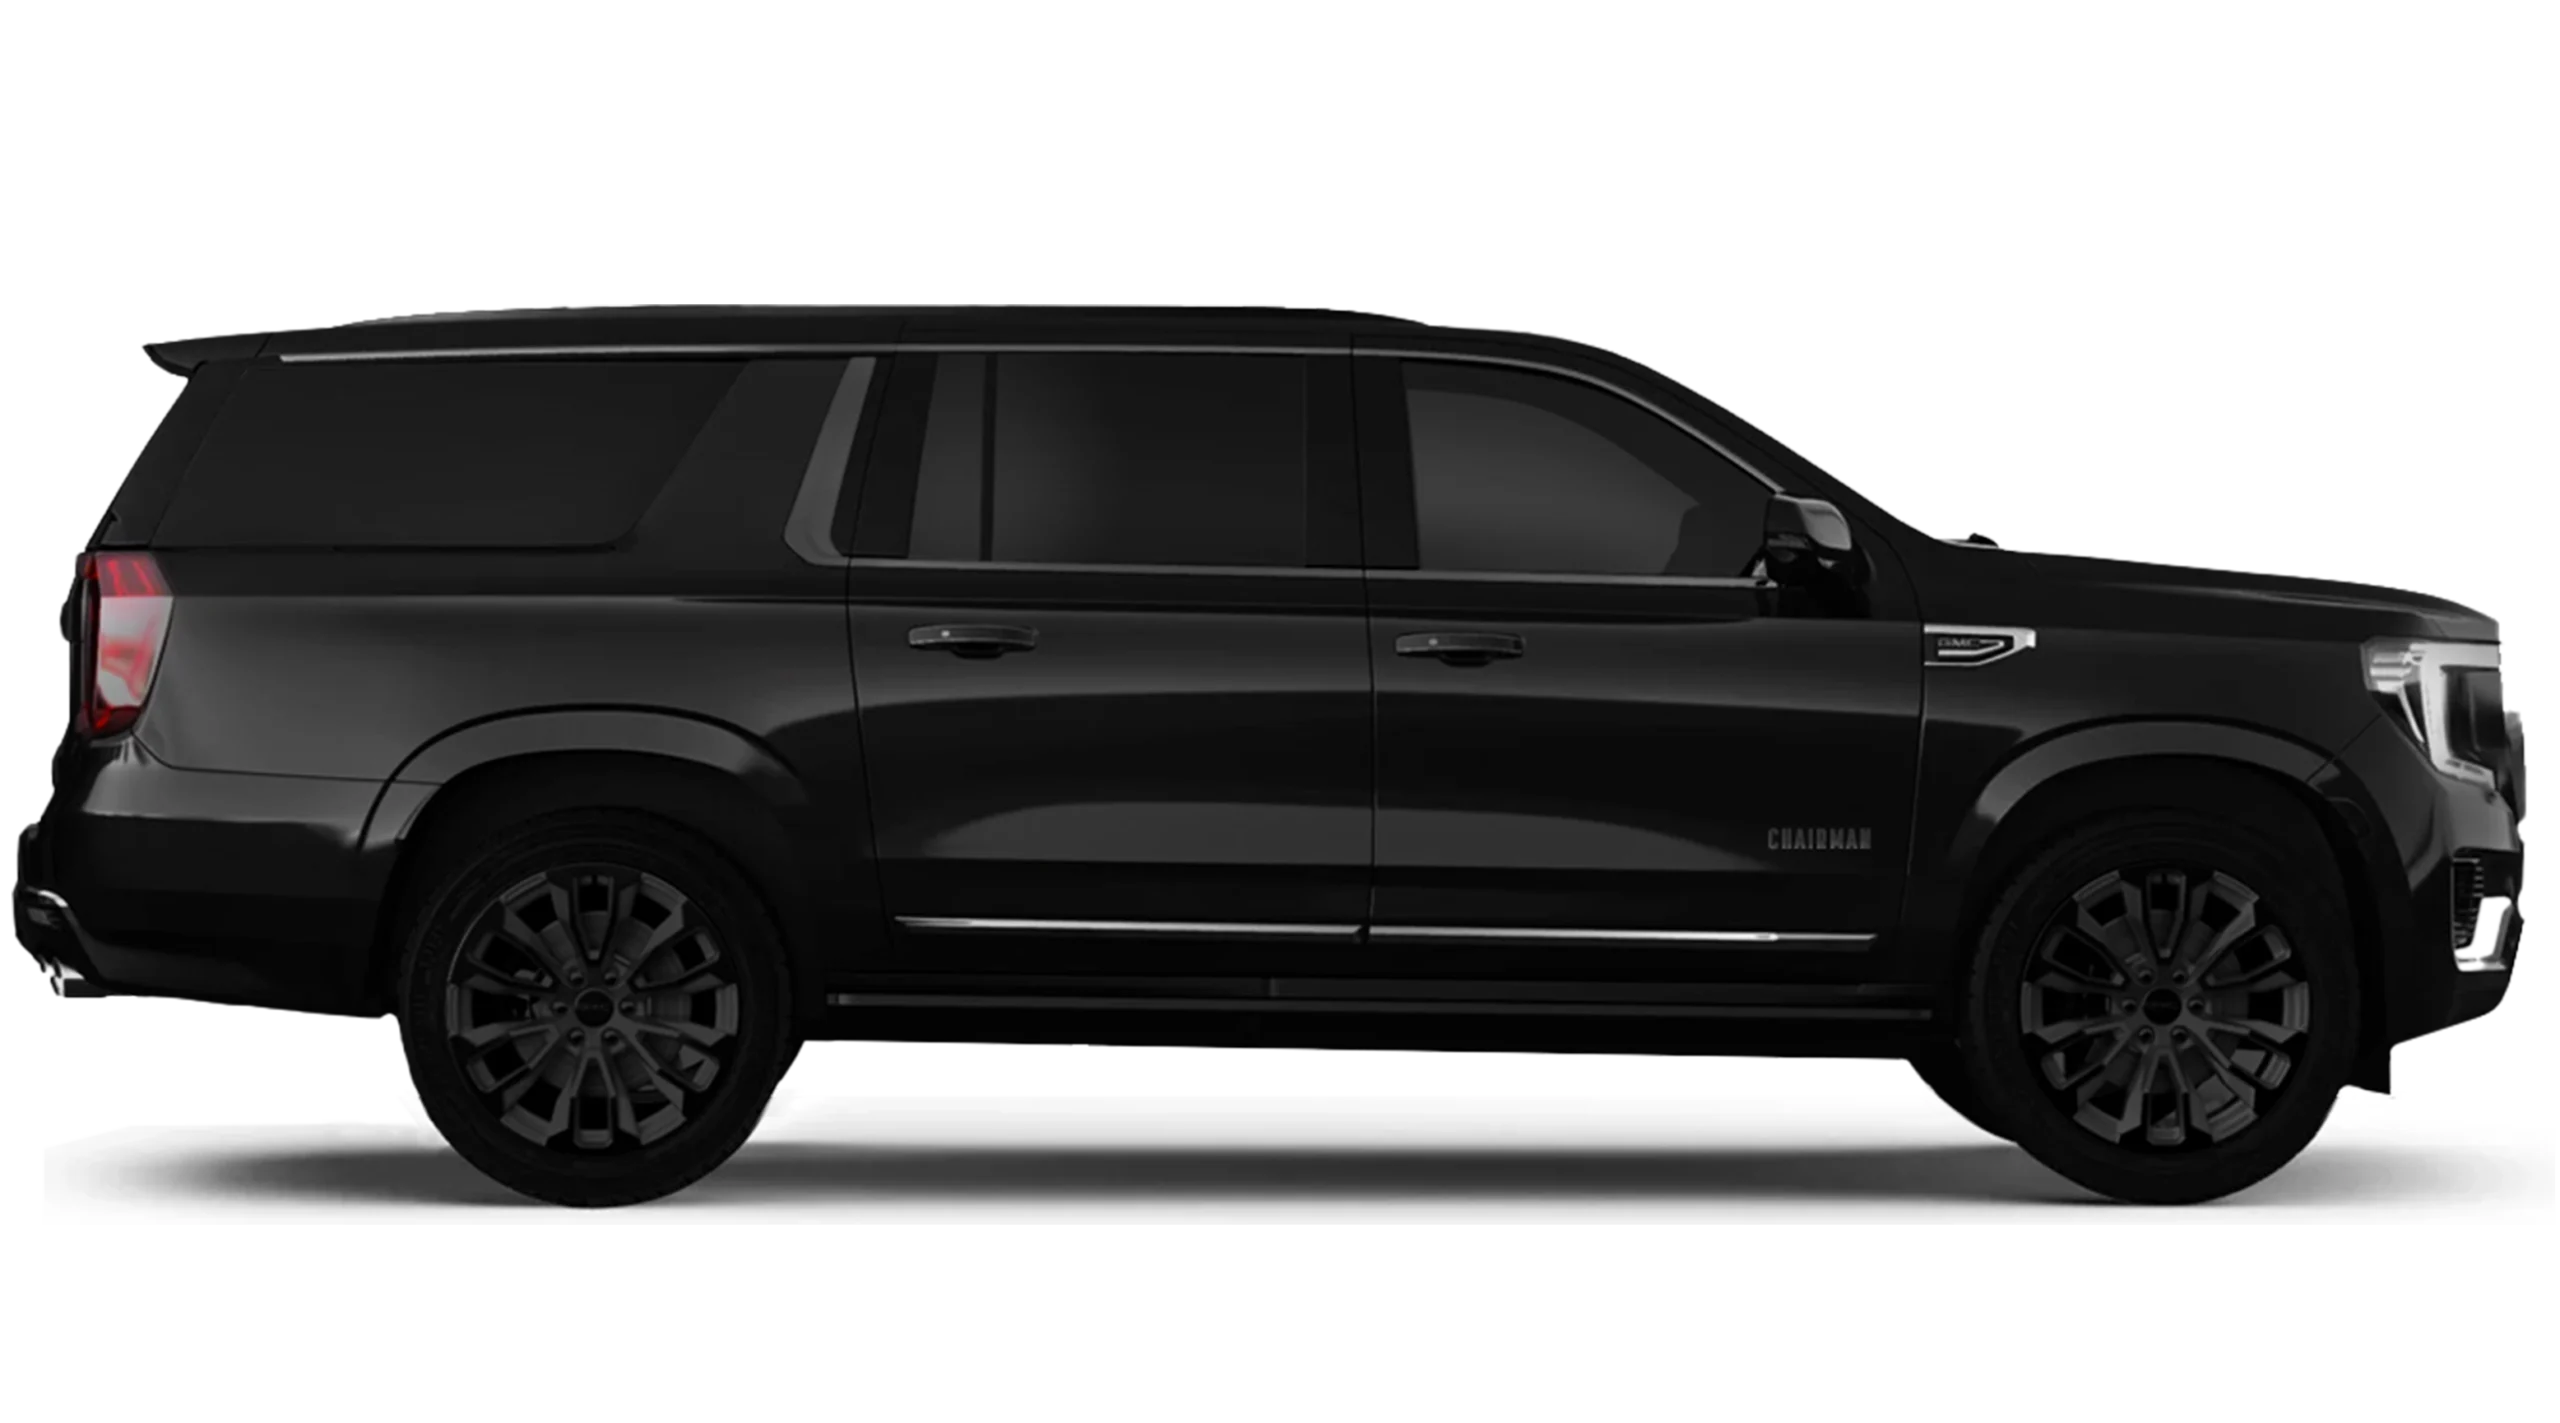 Black luxury SUV side view on dark background.